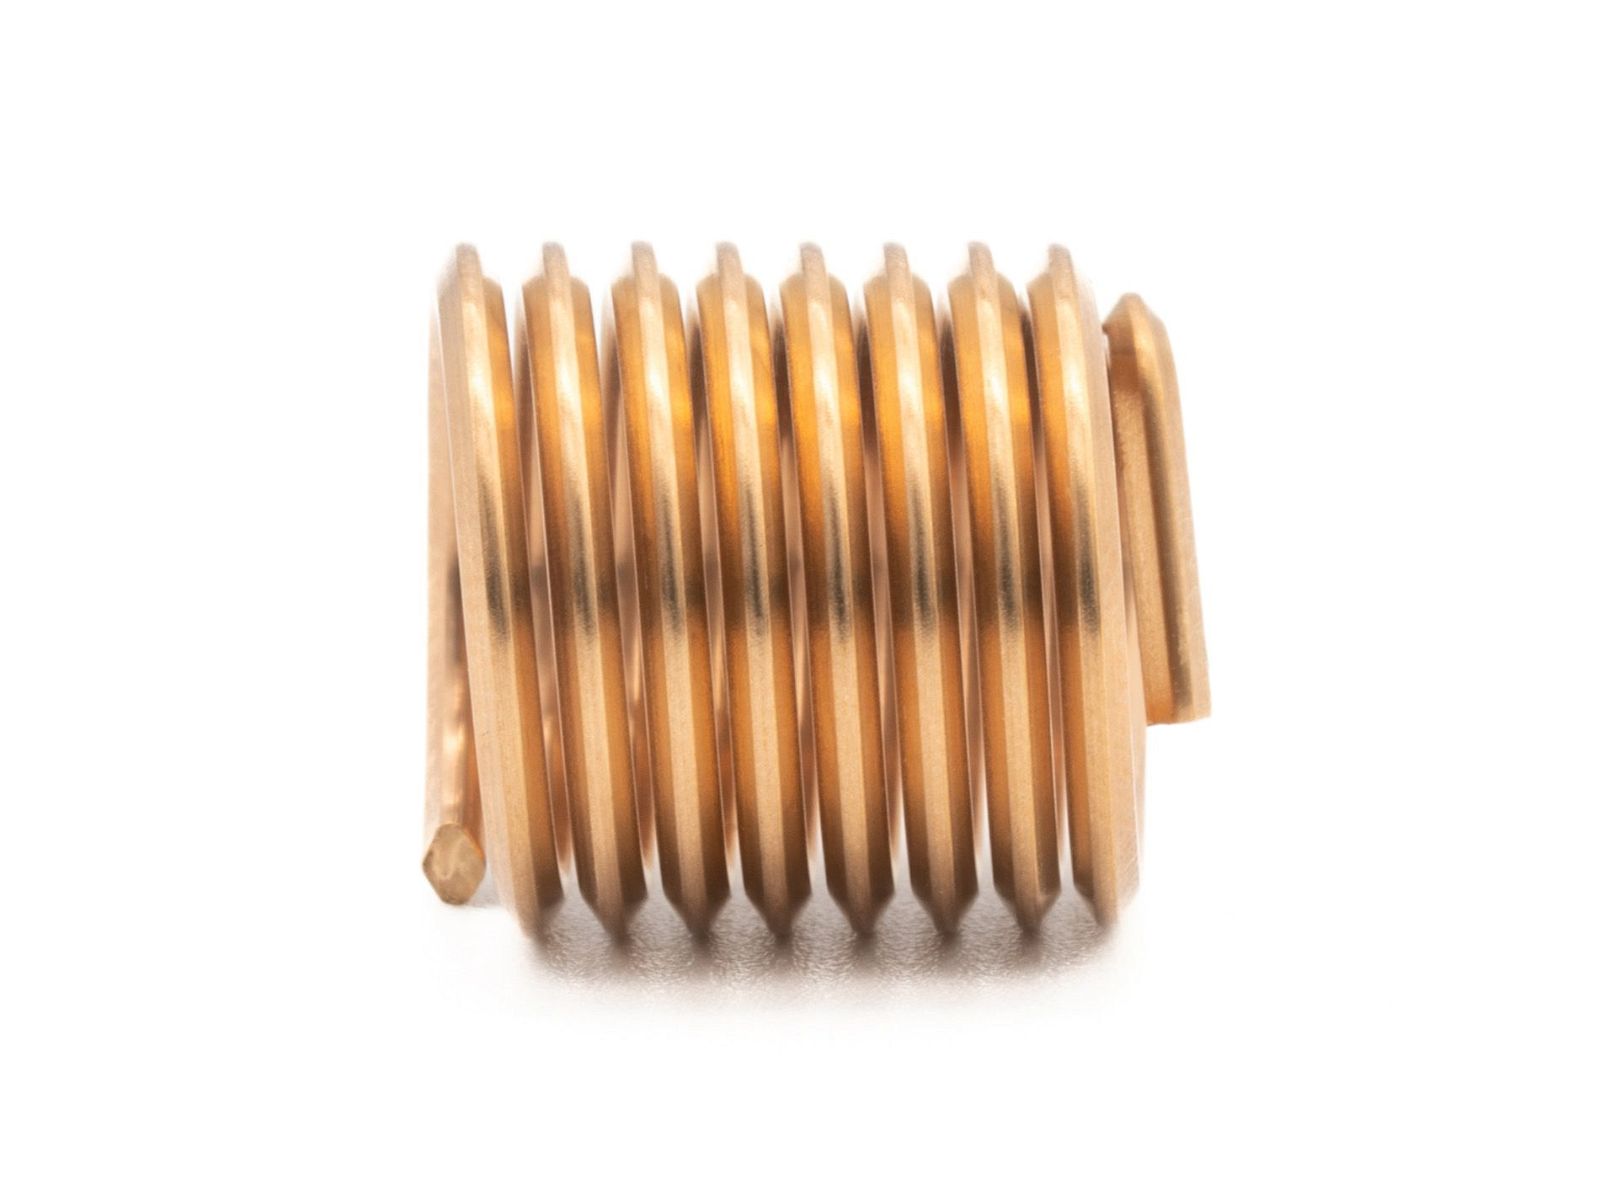  BaerCoil Inserts filetés M 16 x 2,0 - 1,5 D (24 mm) - passage libre - Bronze - 100 pièces